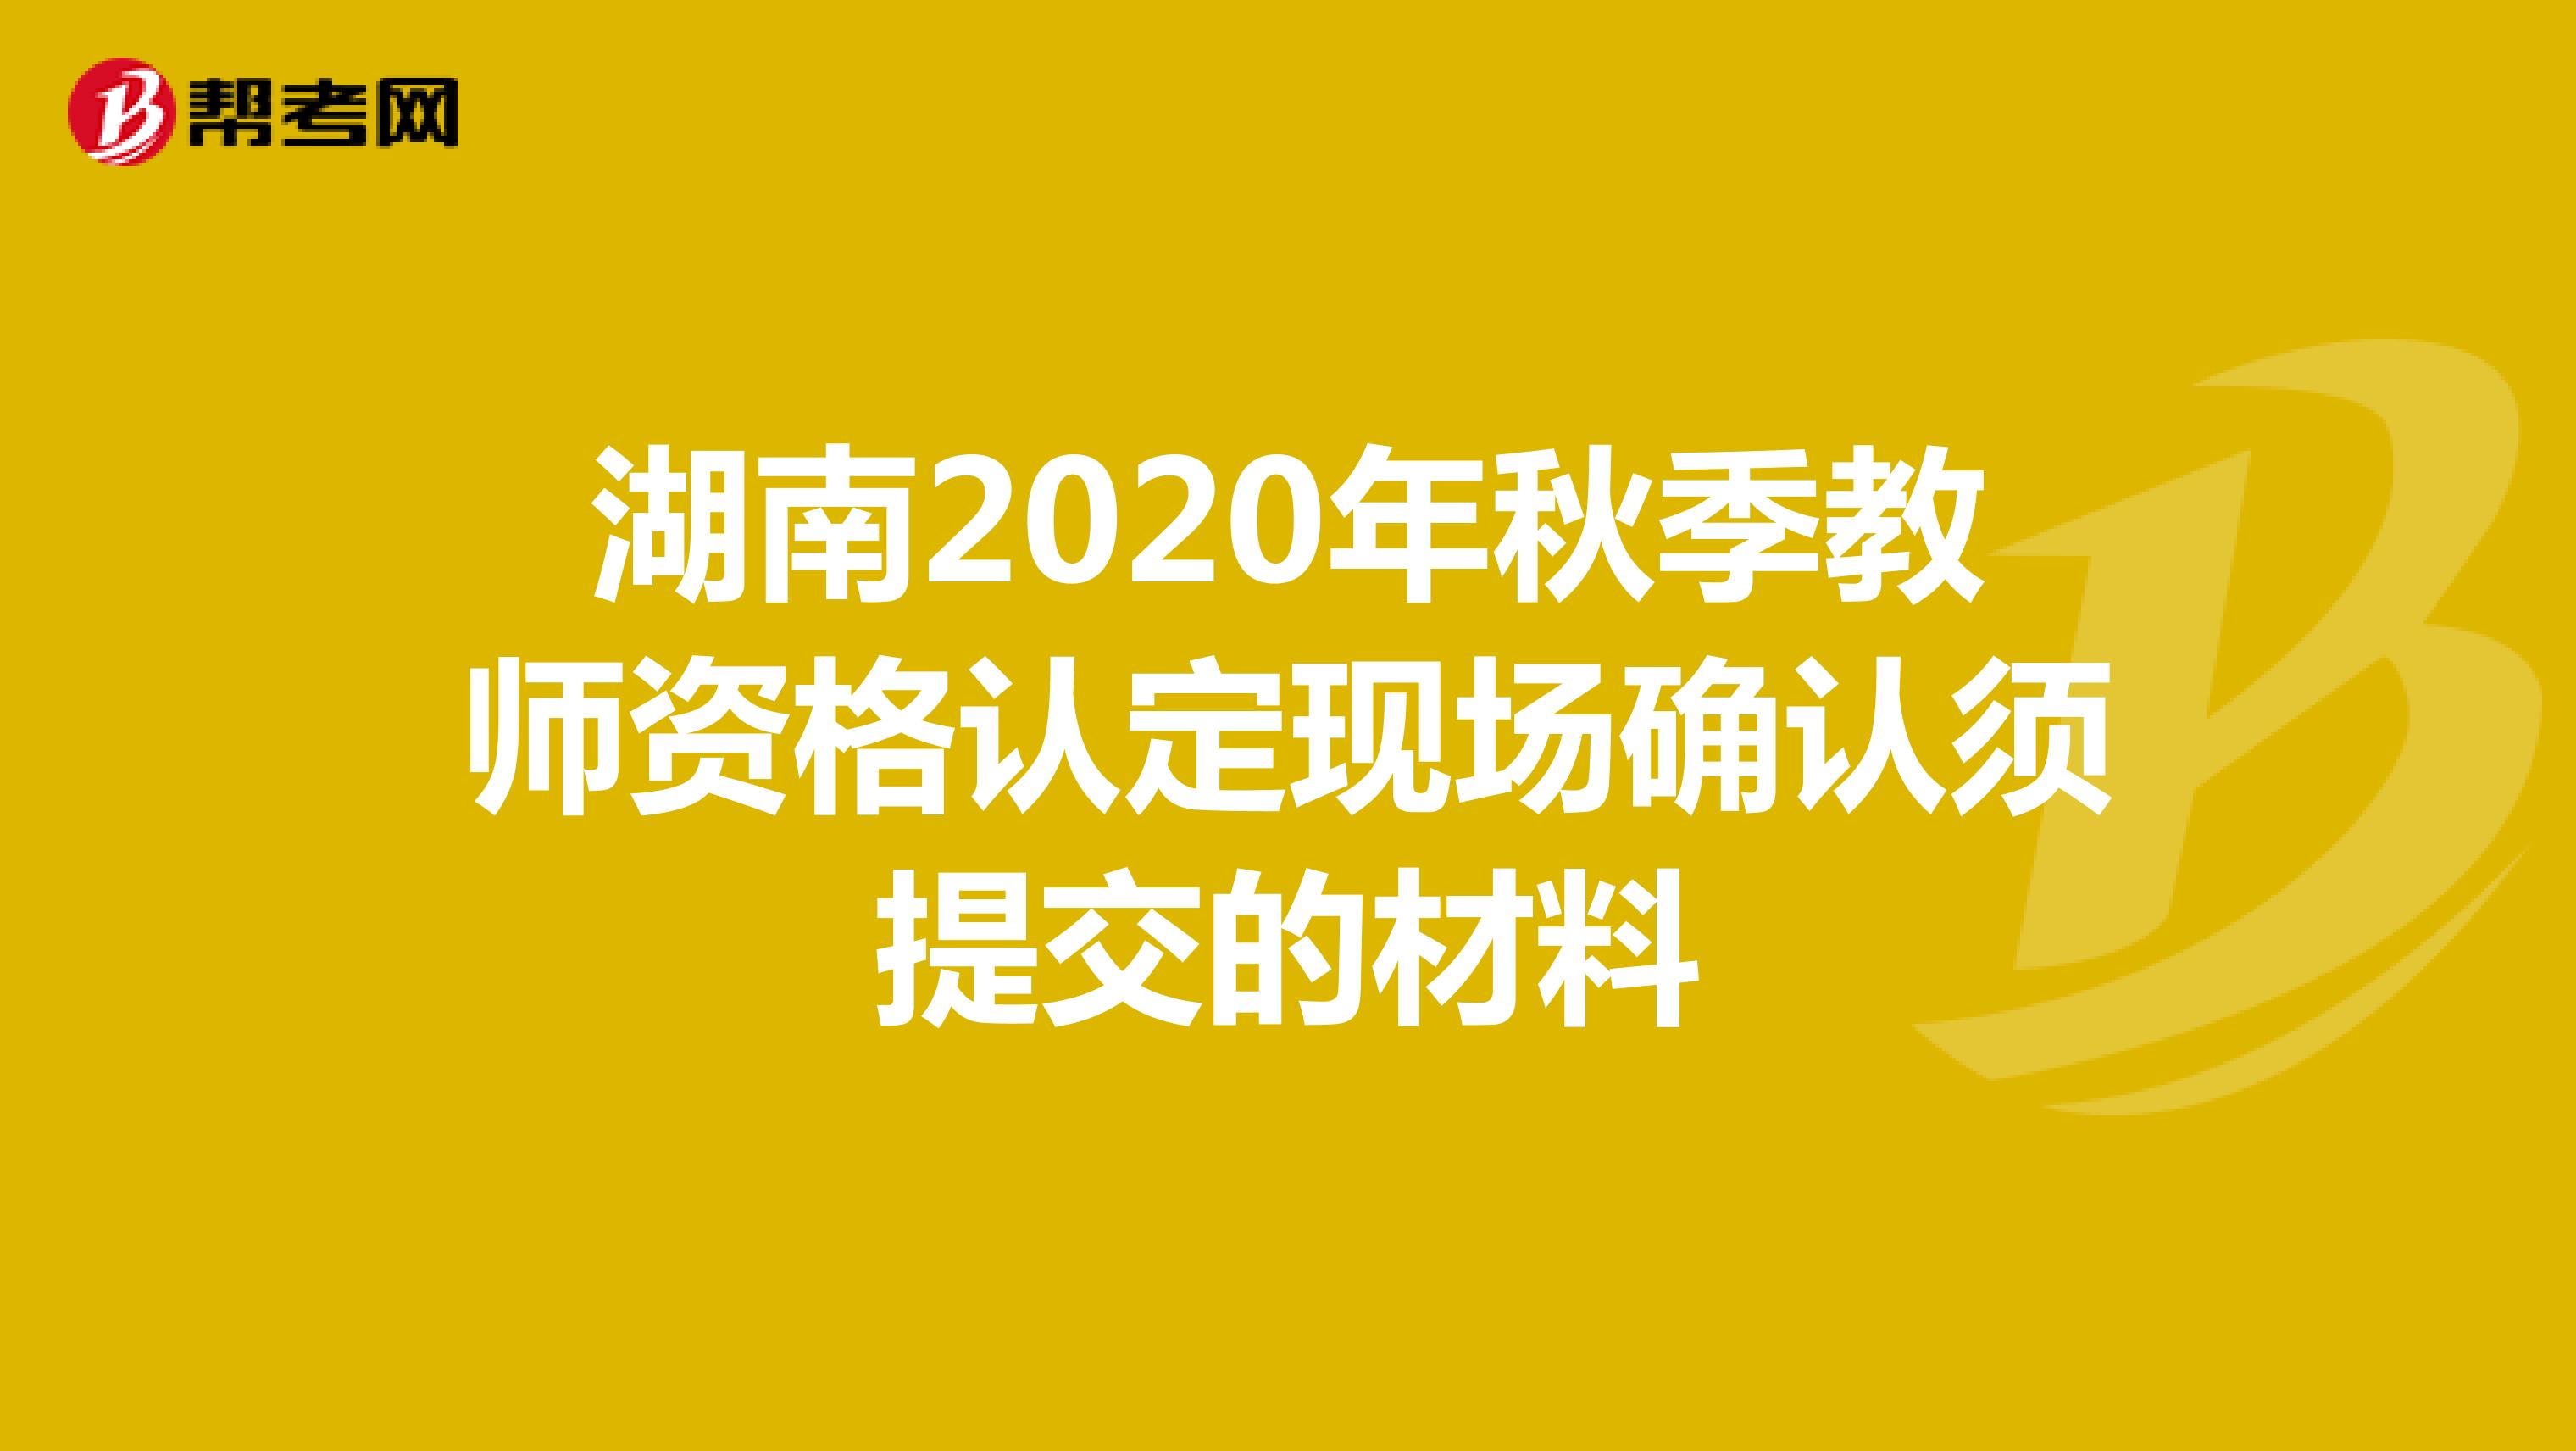 湖南2020年秋季教师资格认定现场确认须提交的材料